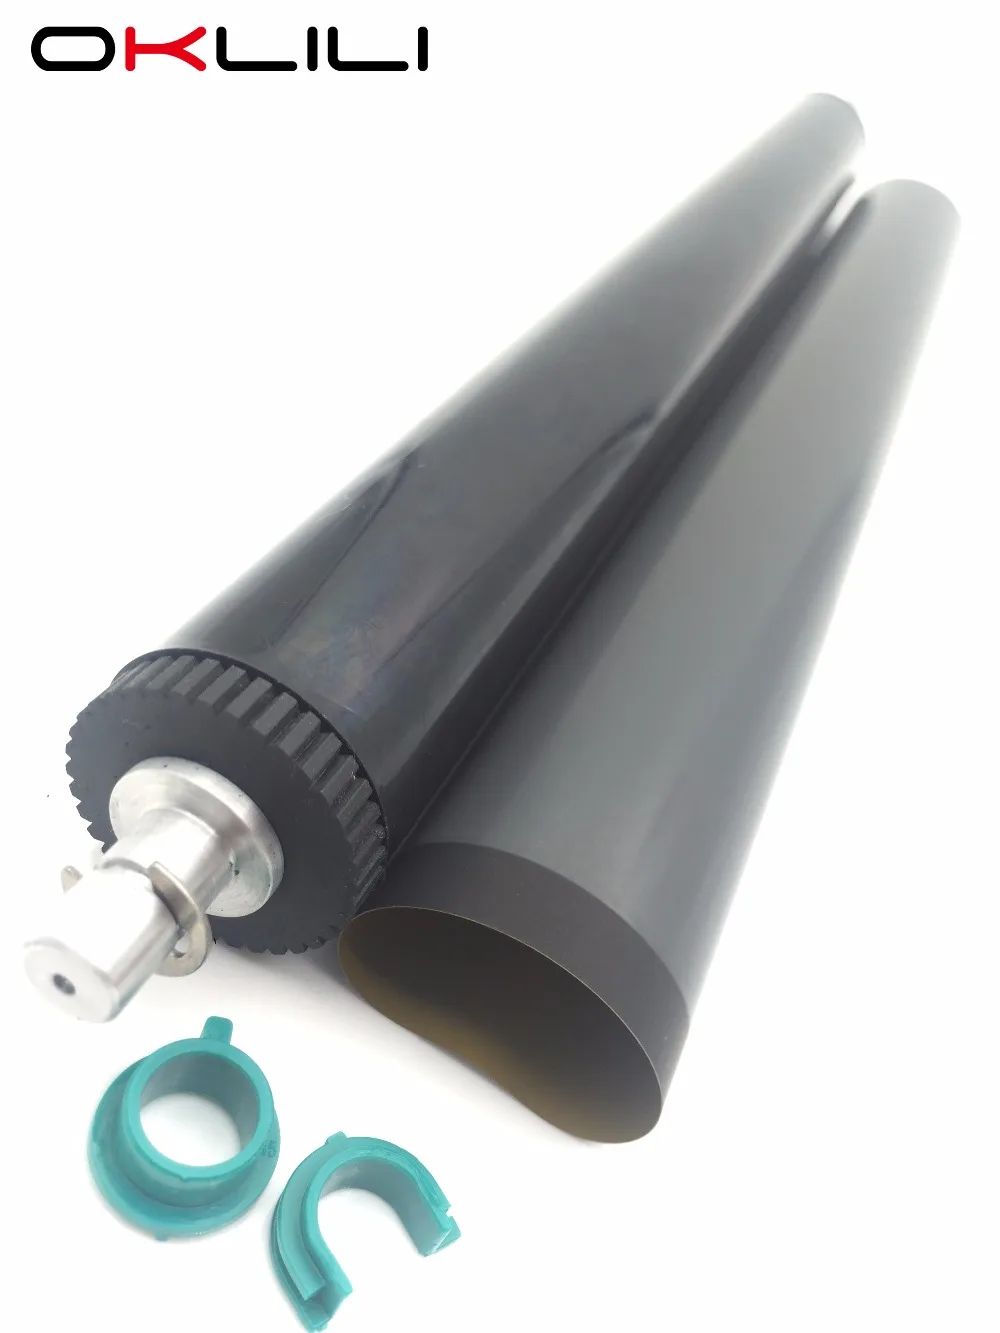 

fuser film sleeve + lower pressure roller lower roller bushing for HP M3027 M3035 P3005 M3027x M3035xs P3005d P3005dn P3005n